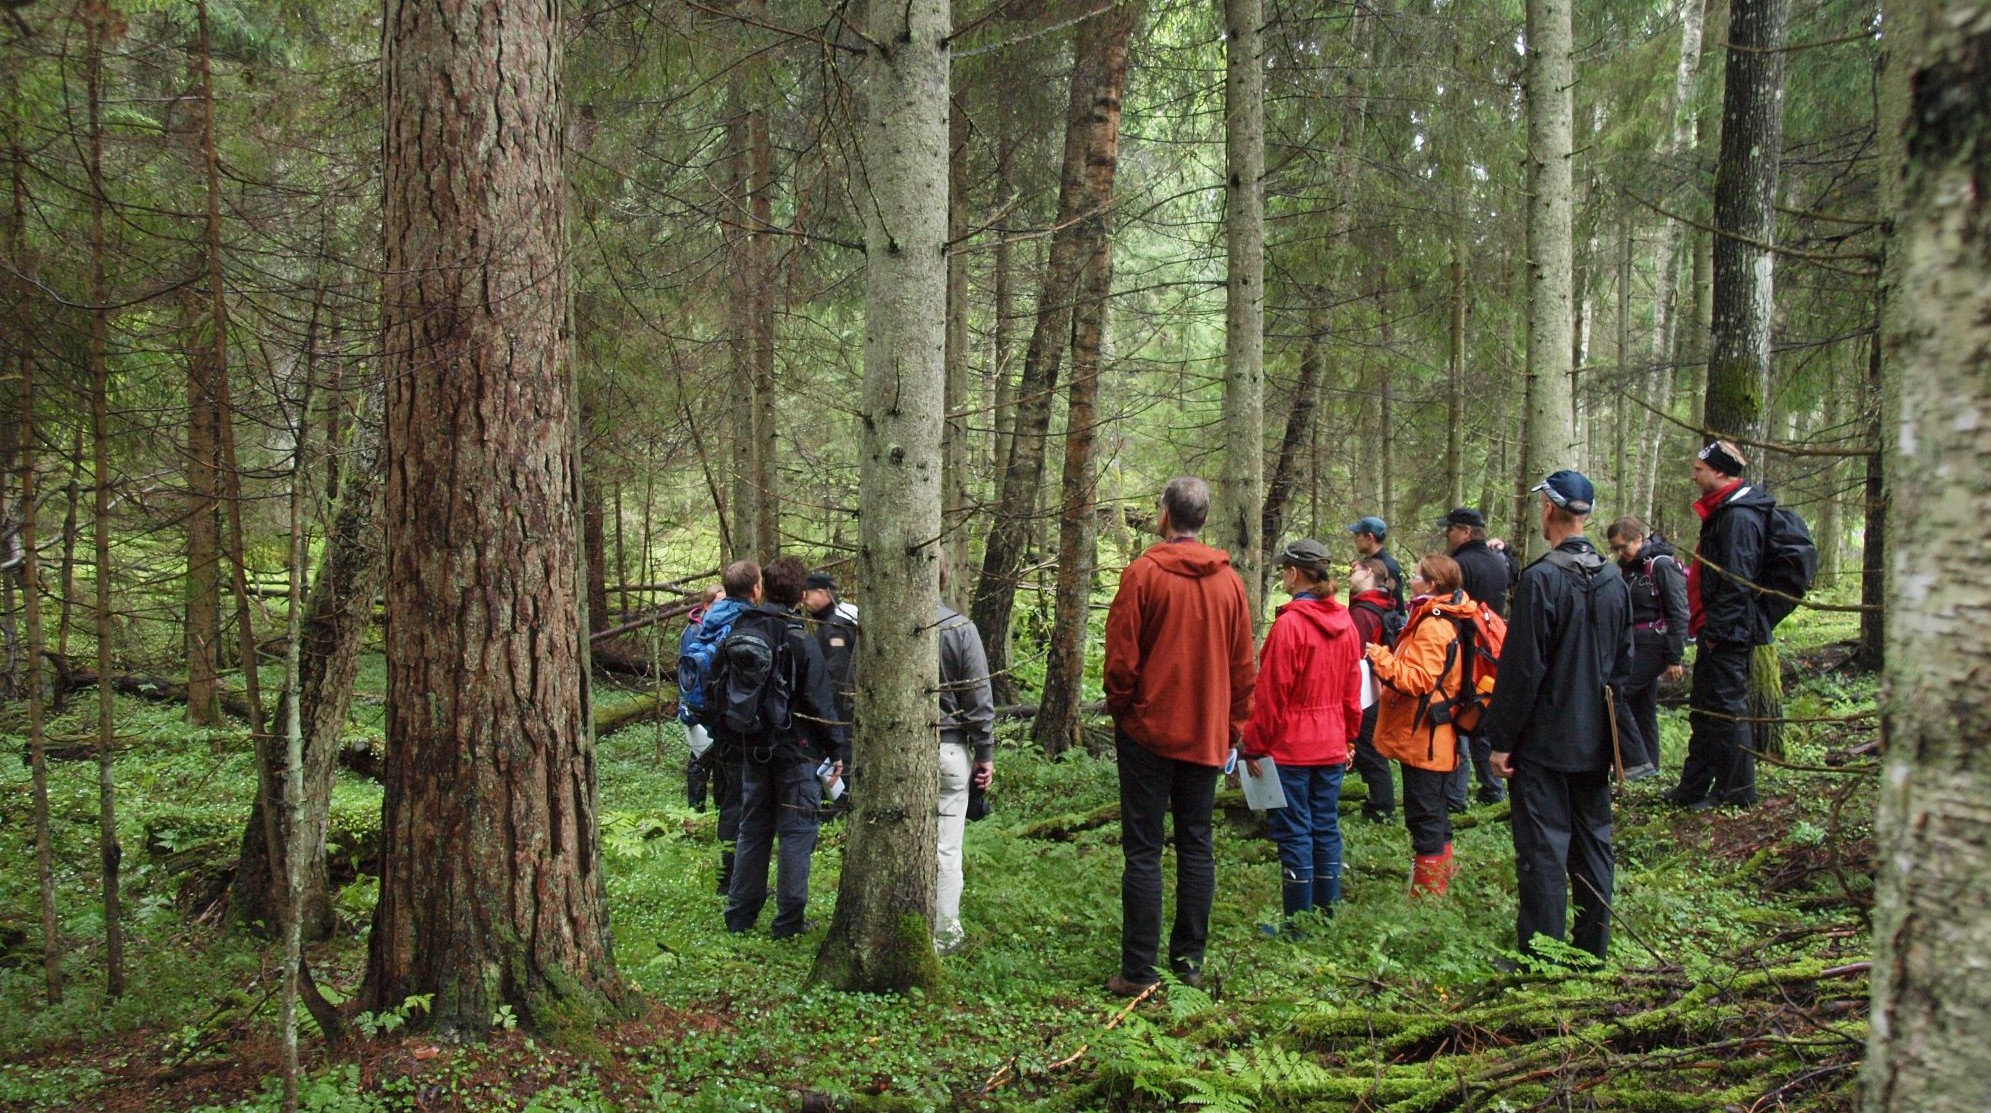 Joukko retkeilijöitä seisoo vanhassa metsässä, jossa kasvaa kuusia, koivuja ja mäntyjä. Kuvassa vasemmalla suuri mänty. Aluskasvillisuus on vehreää.